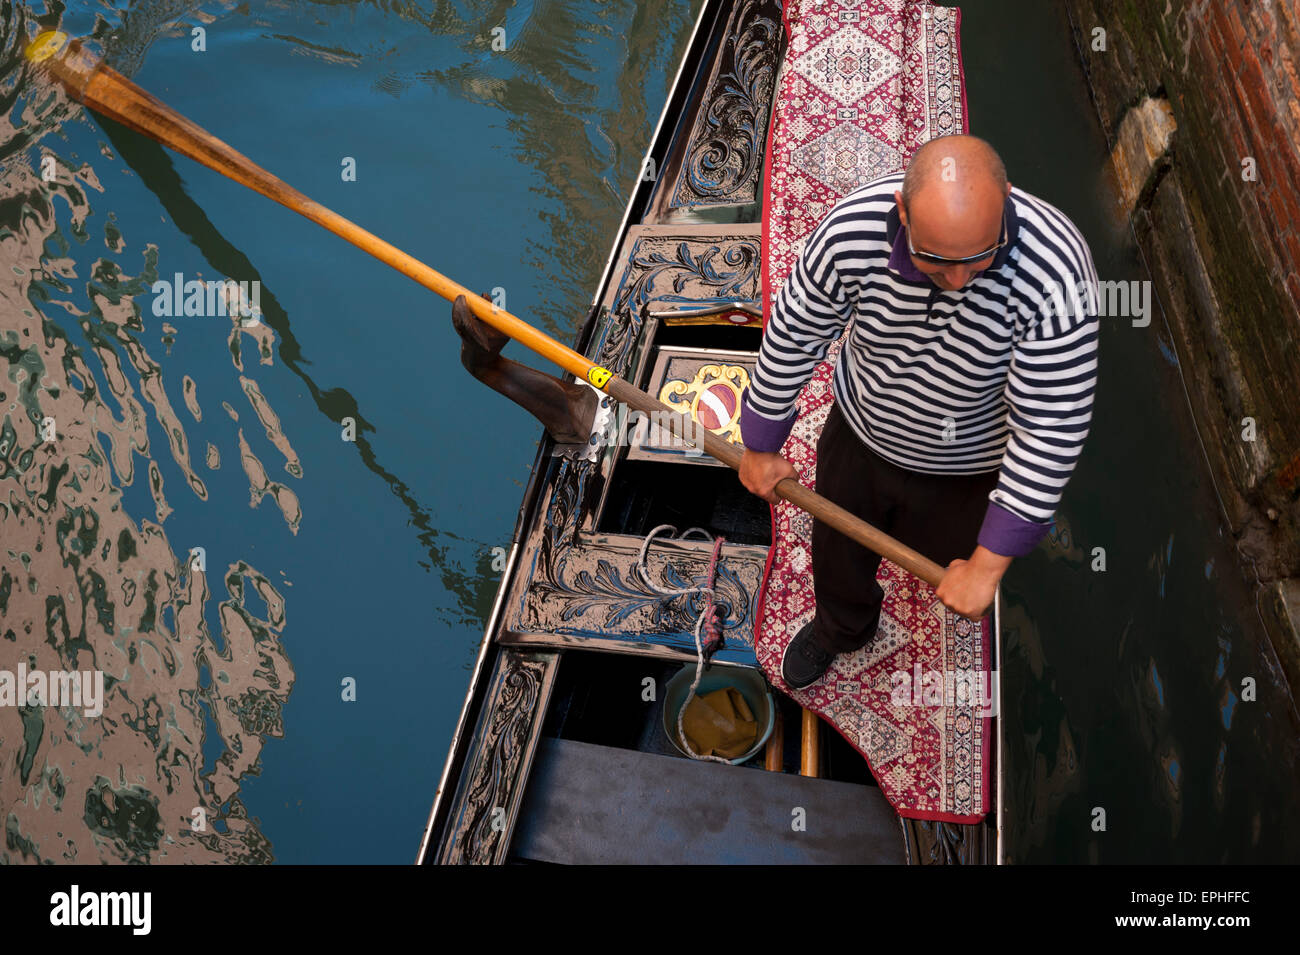 Venise, Italie - 24 avril 2013 : Gondolier en chemise rayée classique gondole traditionnelle pousse le long les eaux d'un canal. Banque D'Images